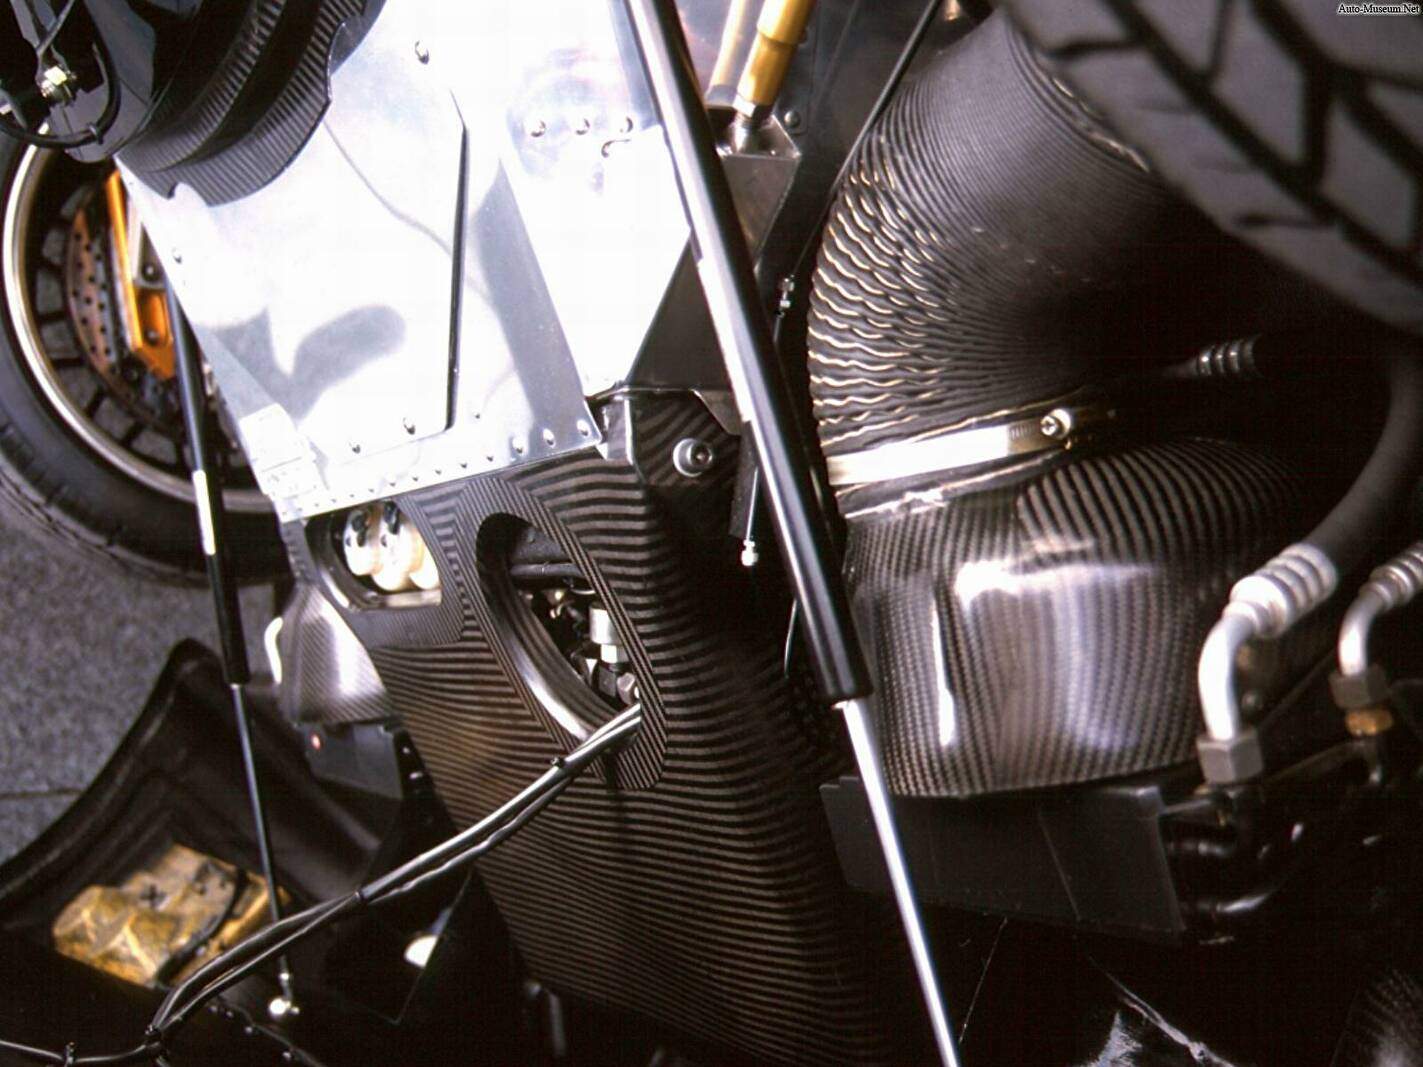 Dauer 962 Le-Mans (1993-1996),  ajouté par Raptor